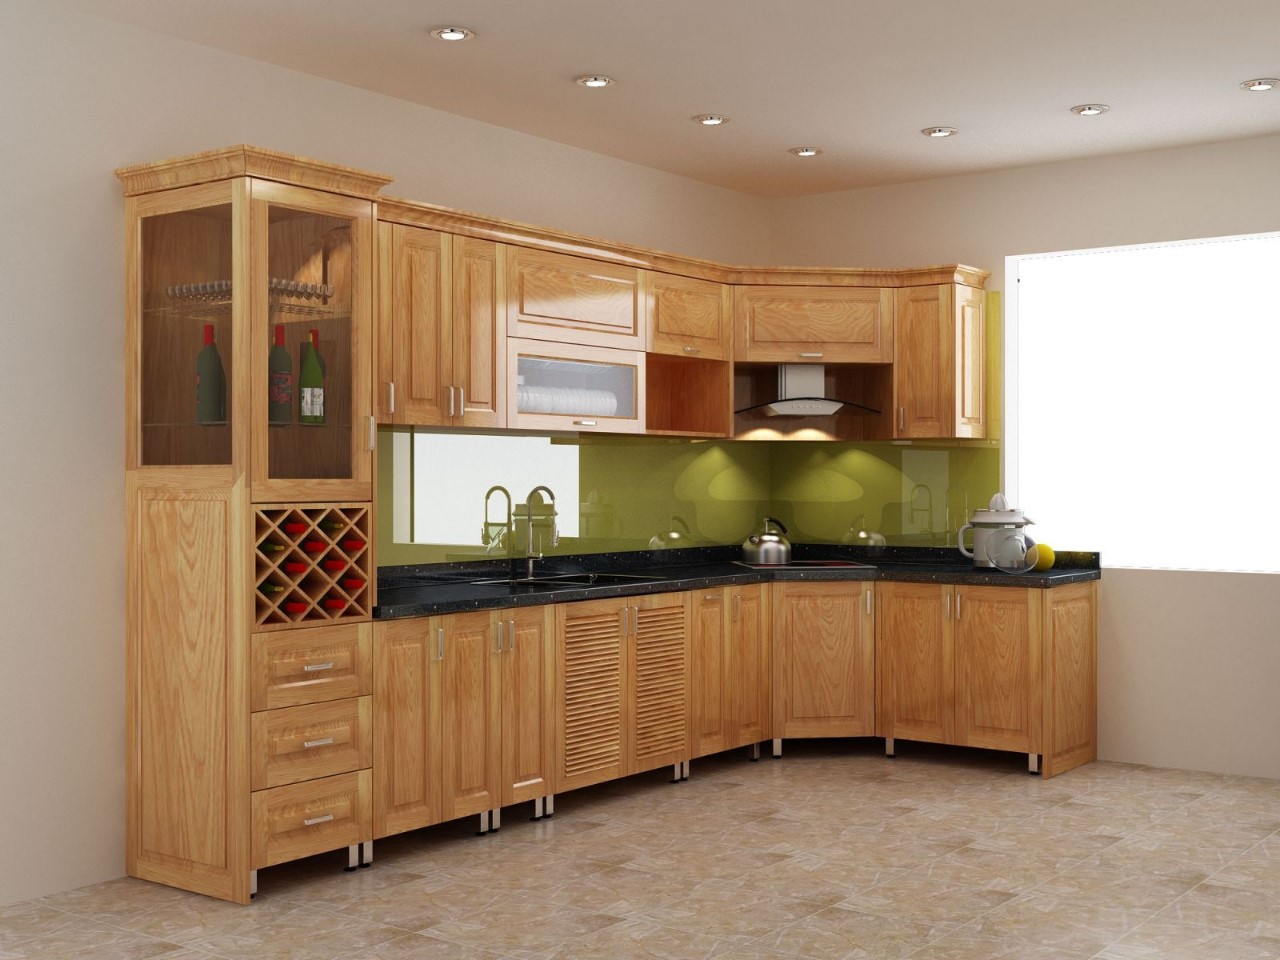 Mẫu tủ bếp dưới đẹp bằng gỗ tự nhiên